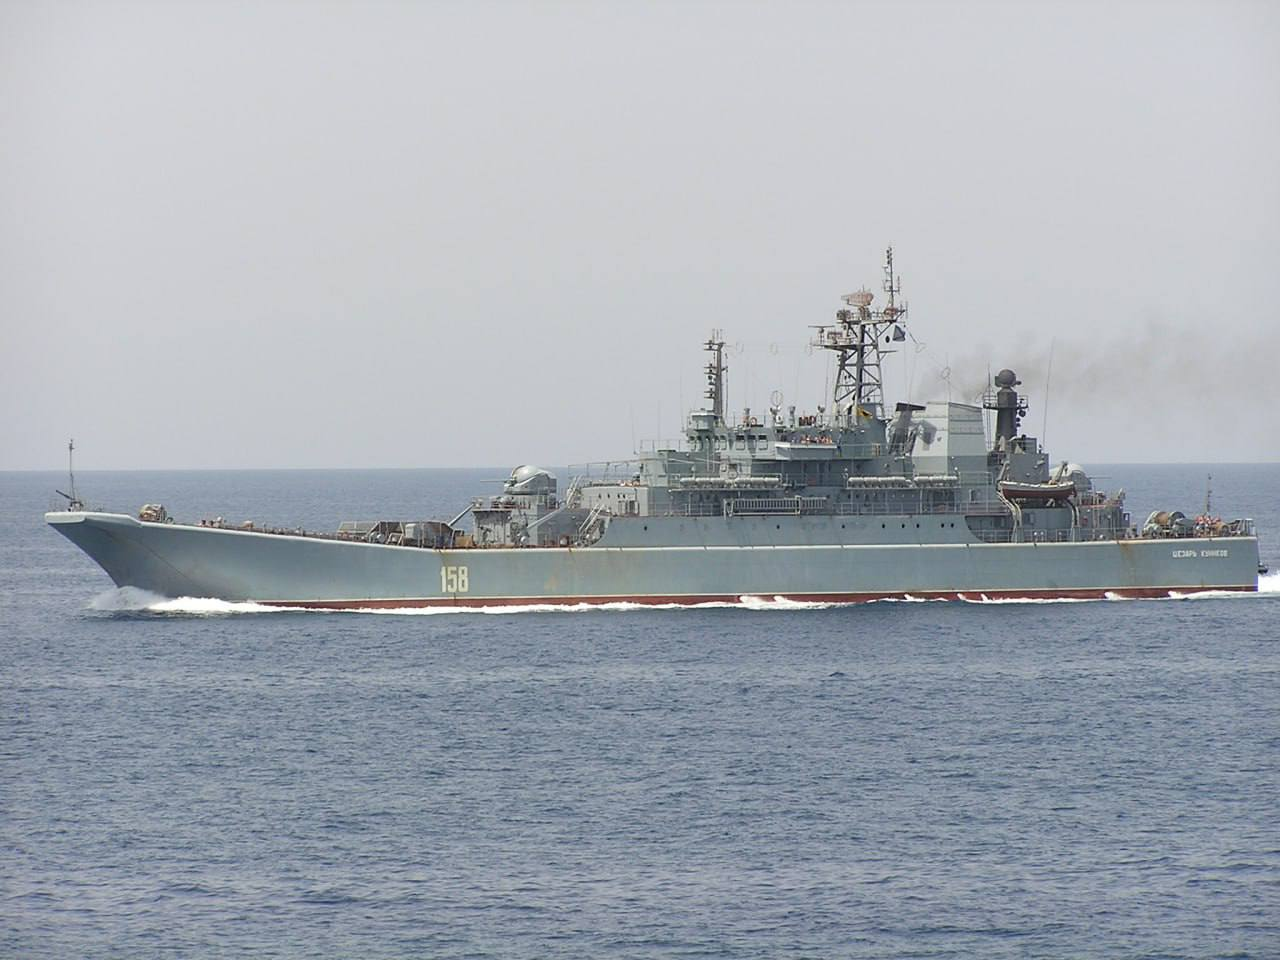 Οι Ουκρανοί βύθισαν το ρωσικό αποβατικό πλοίο Ceasar Kunikov κλάσης Ropucha στη Μαύρη Θάλασσα (βίντεο) (upd)